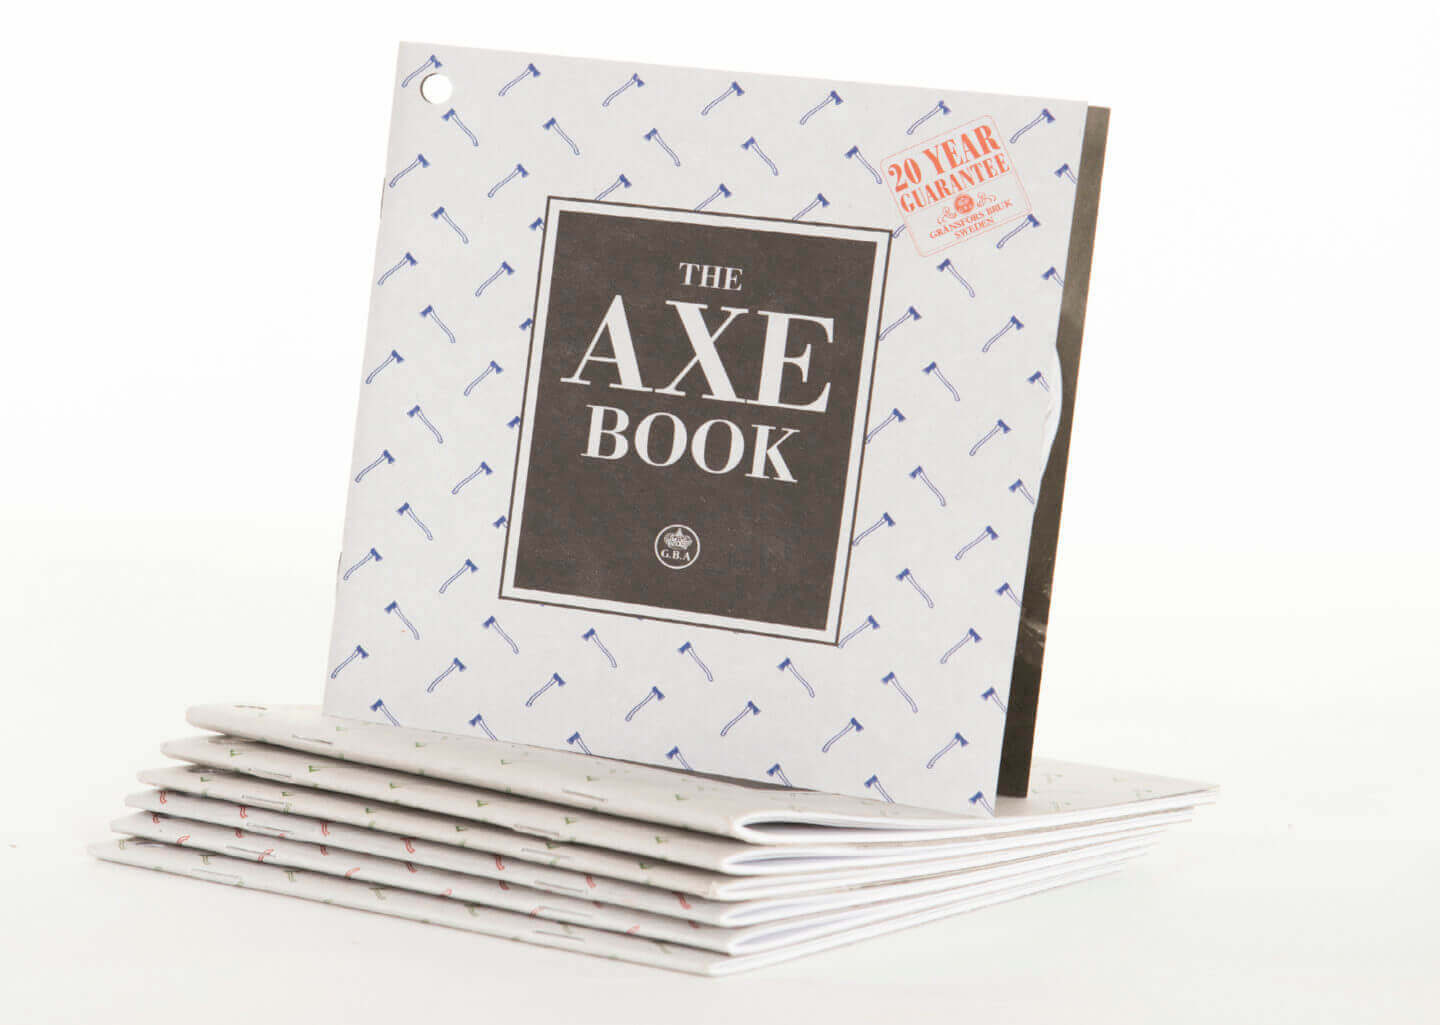 THE AXE BOOK